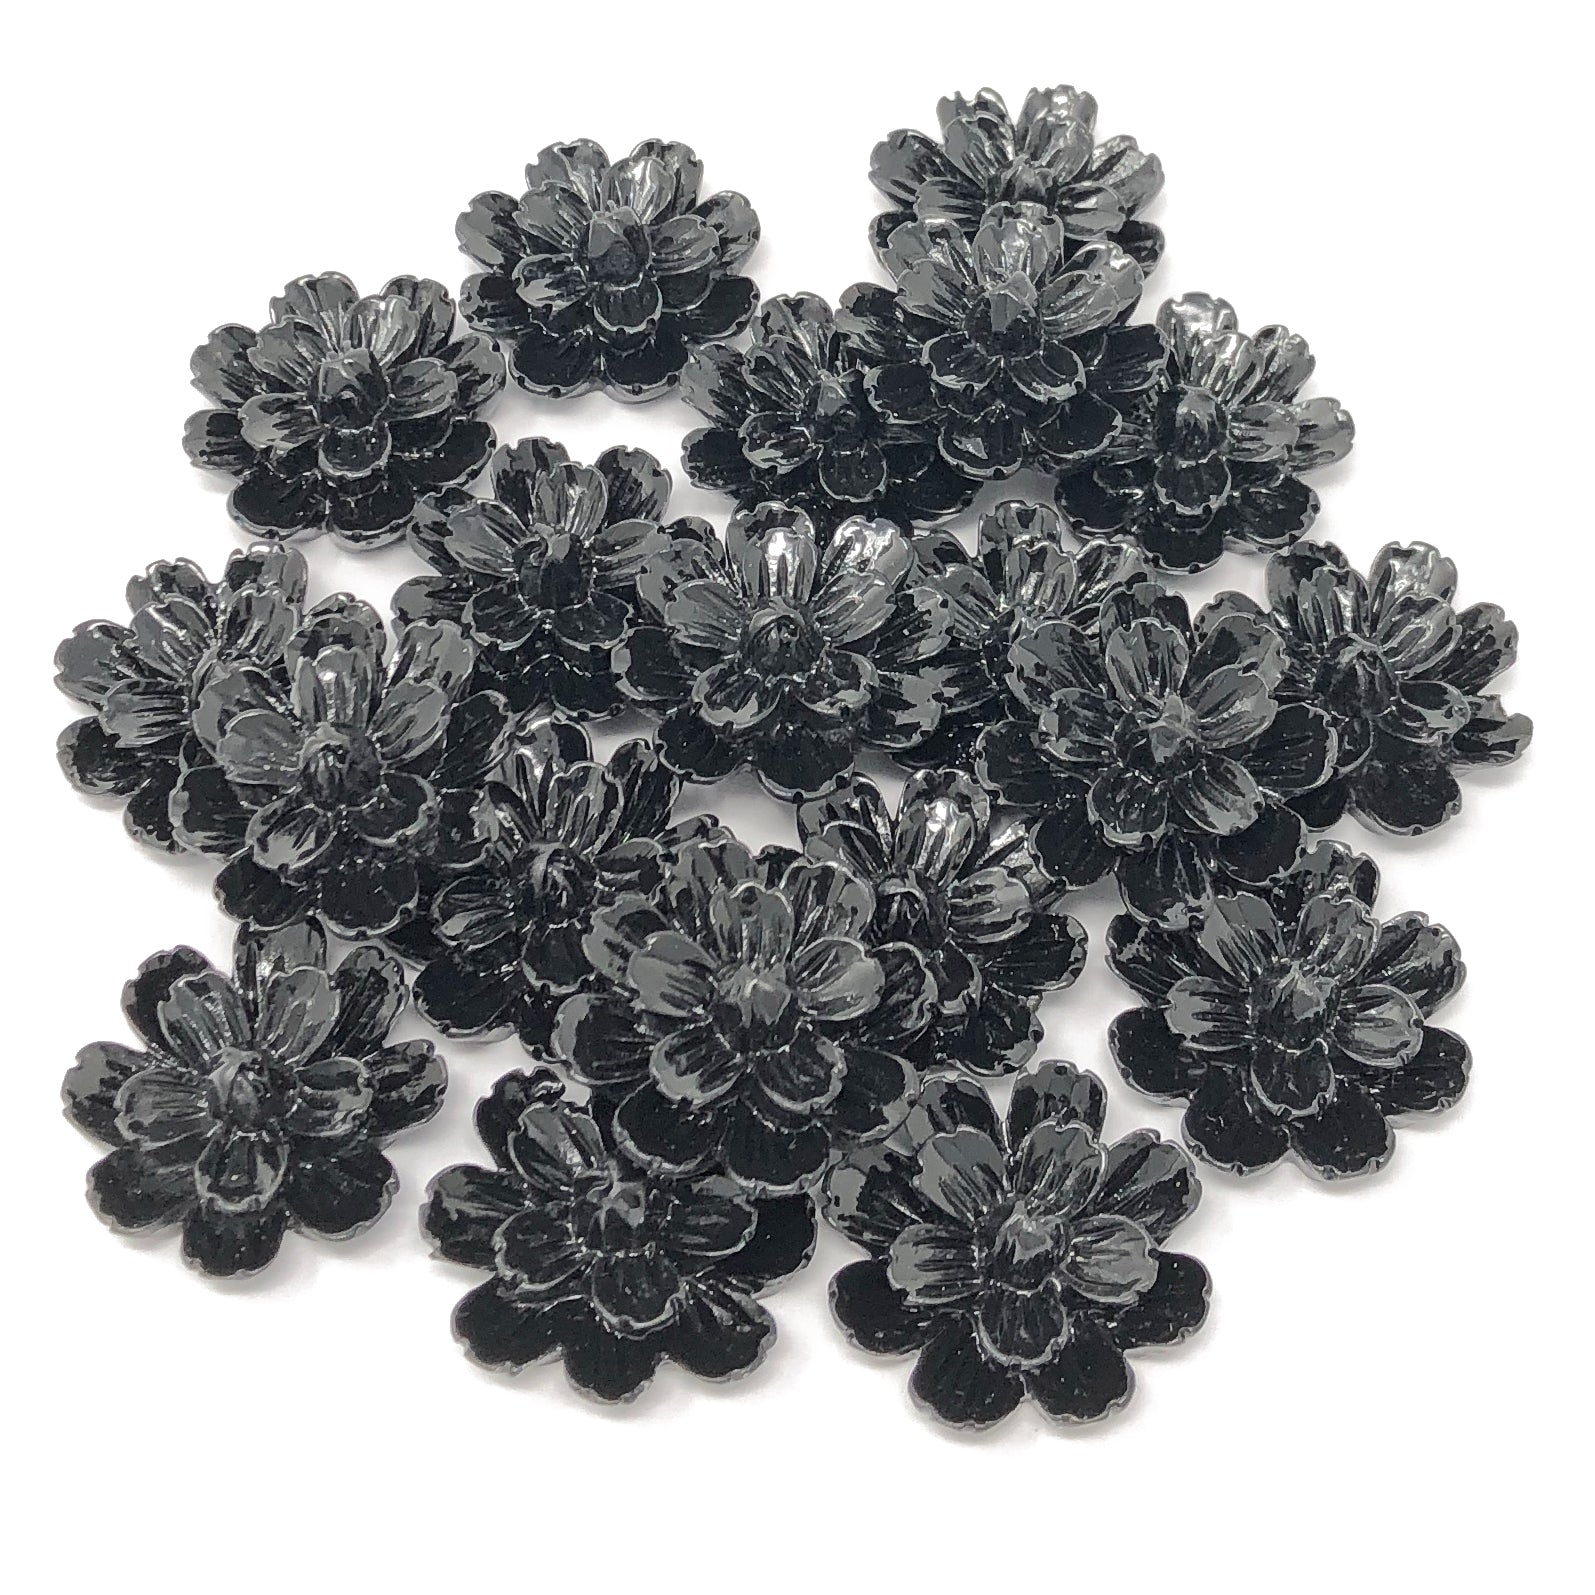 Black 20mm Resin Flower Flatbacks - Pack of 20